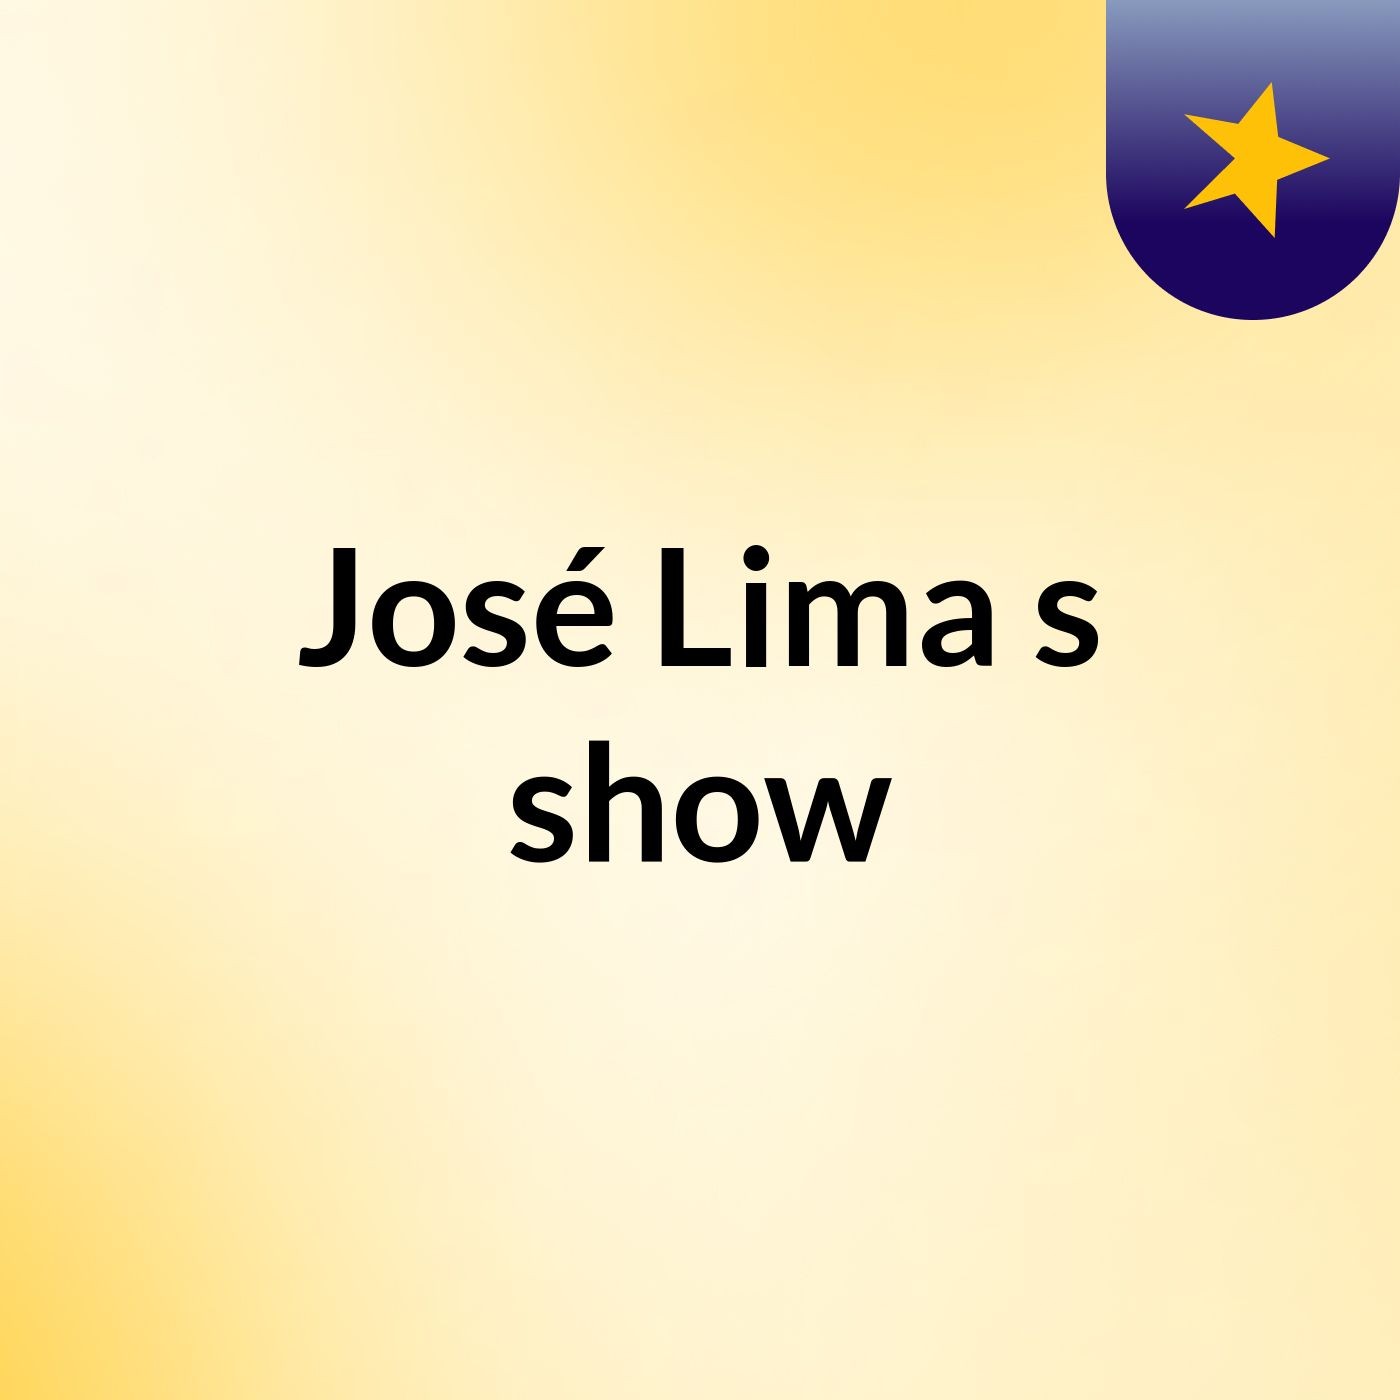 José Lima's show